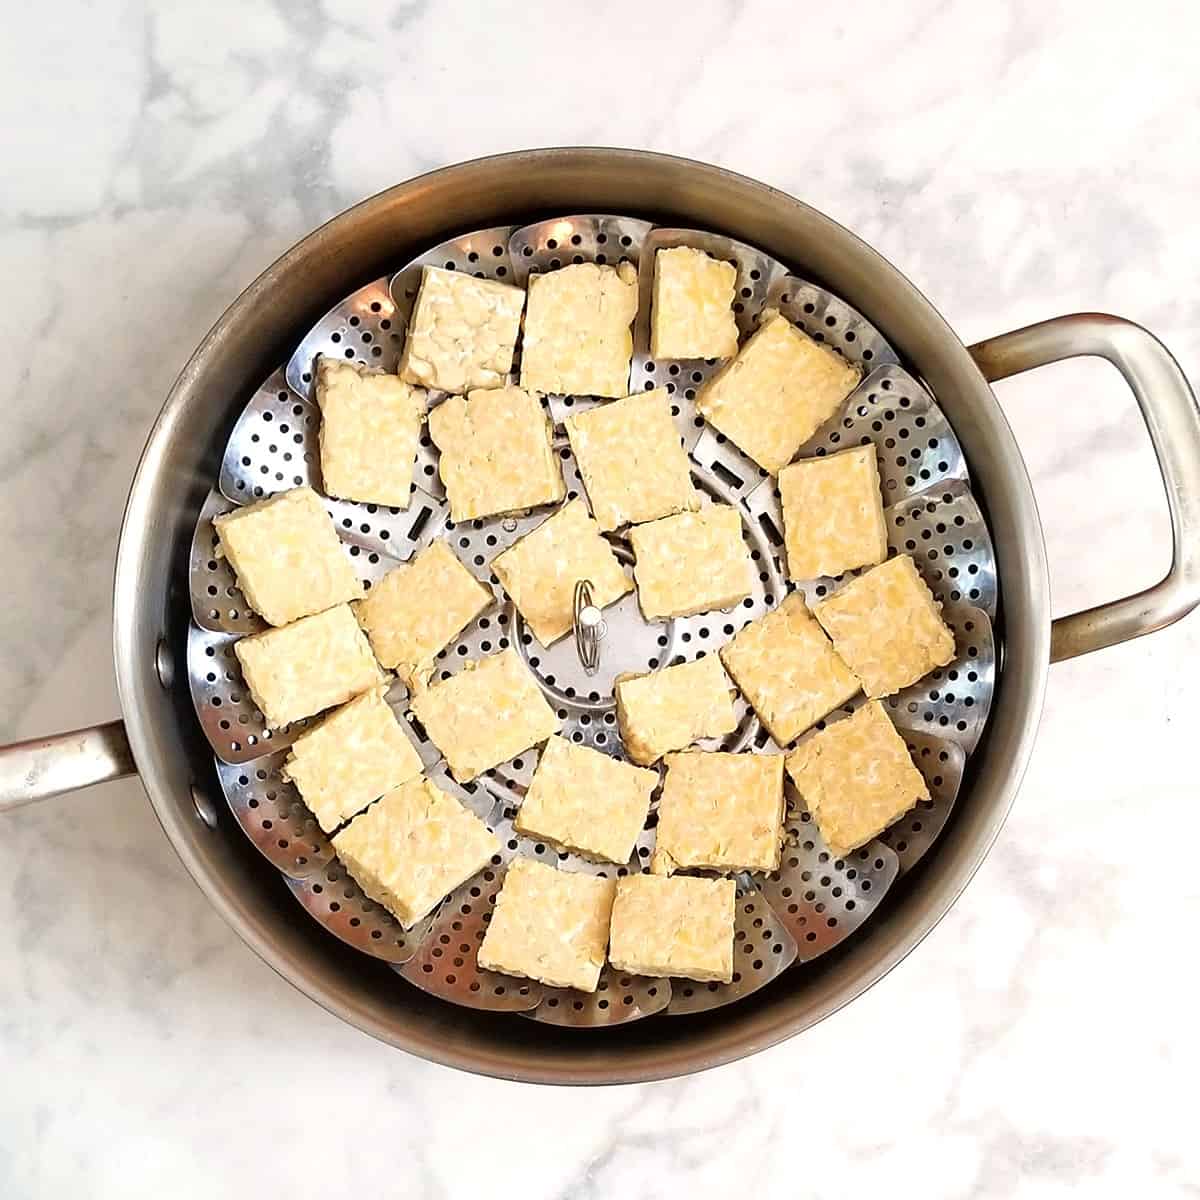 tempeh steaming in pan